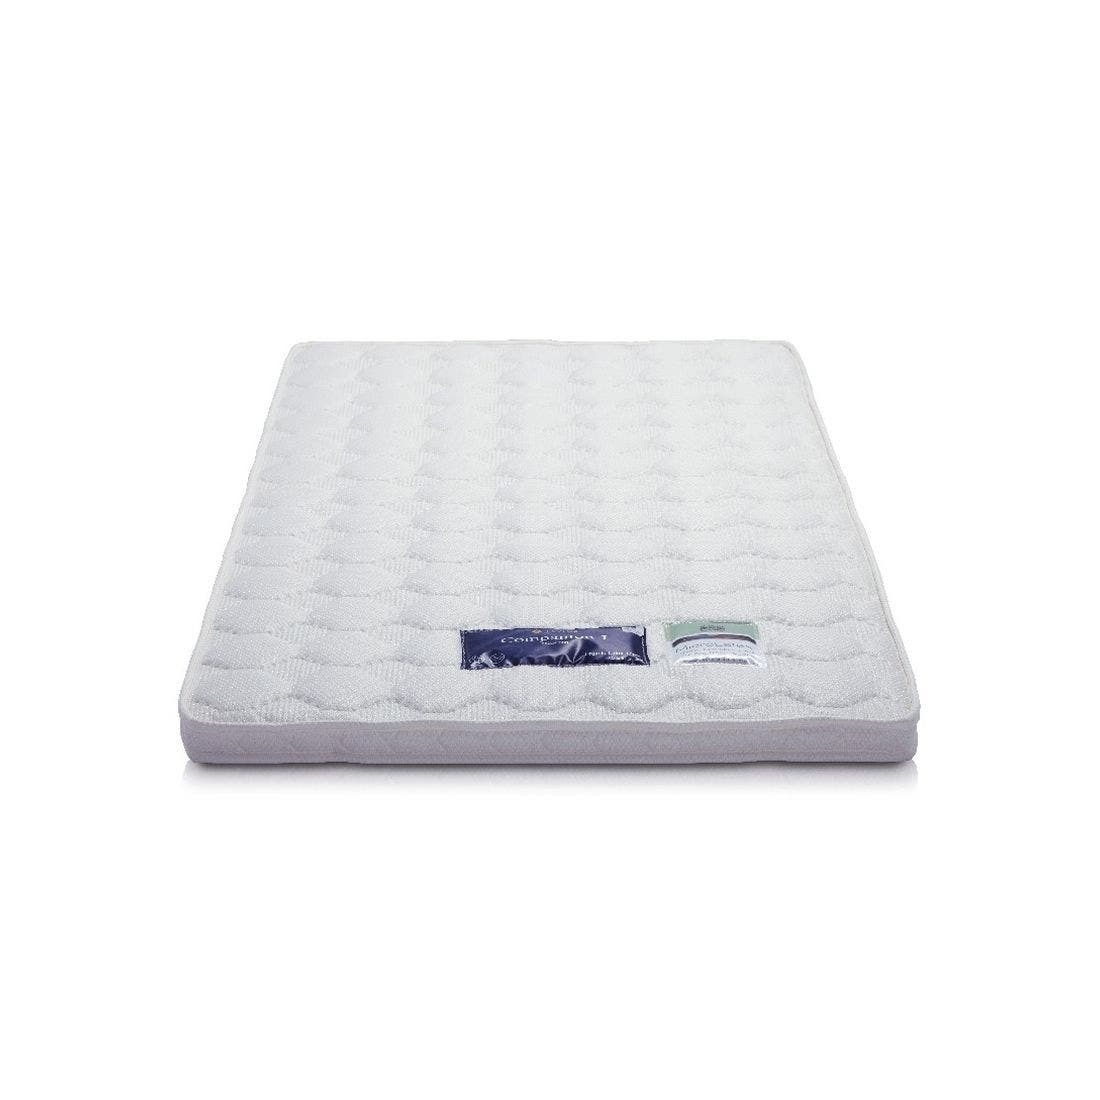 39005021-mattress-bedding-mattress-pads-protectors-mattress-pads-toppers-01